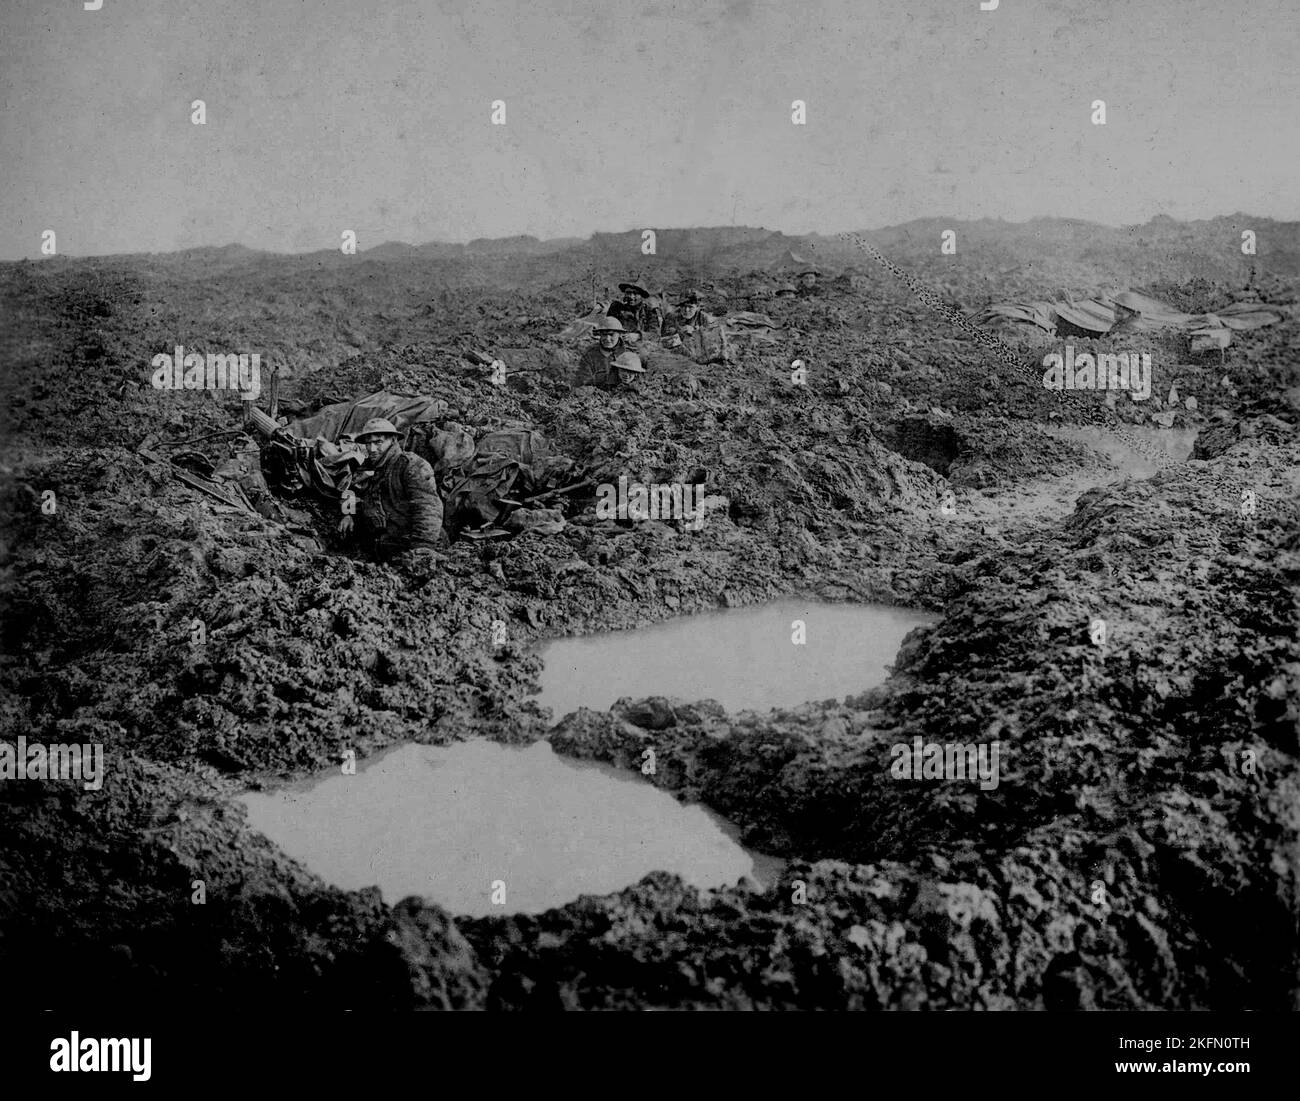 PASCHENDALE, BELGIO - Novembre 1917 - le truppe dell'Armata Canadese 16th Machine Gun Company tengono la linea in condizioni atroci sul Passchendaele Foto Stock